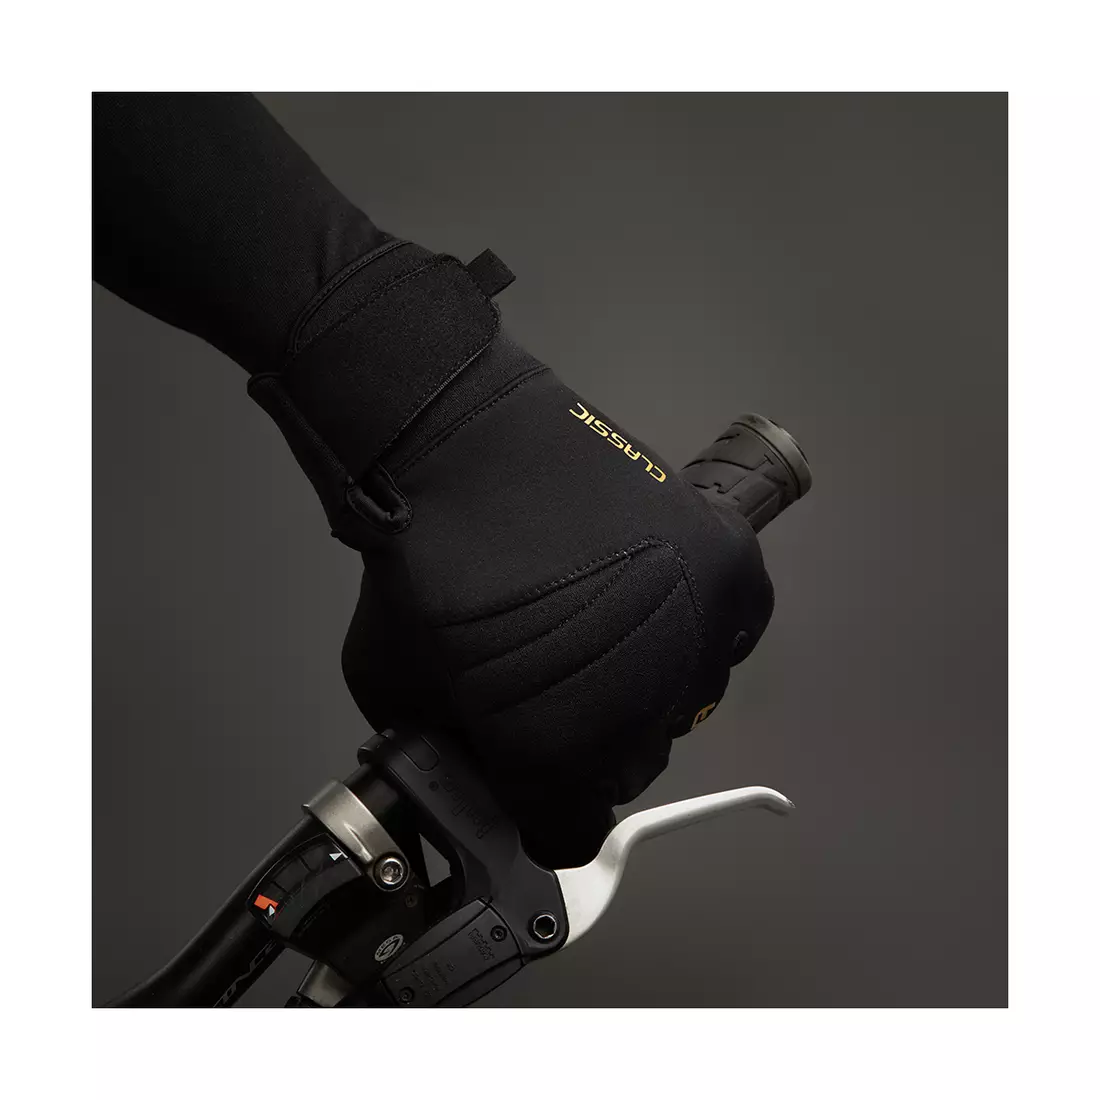 CHIBA CLASSIC mănuși de ciclism de iarnă, black/gold